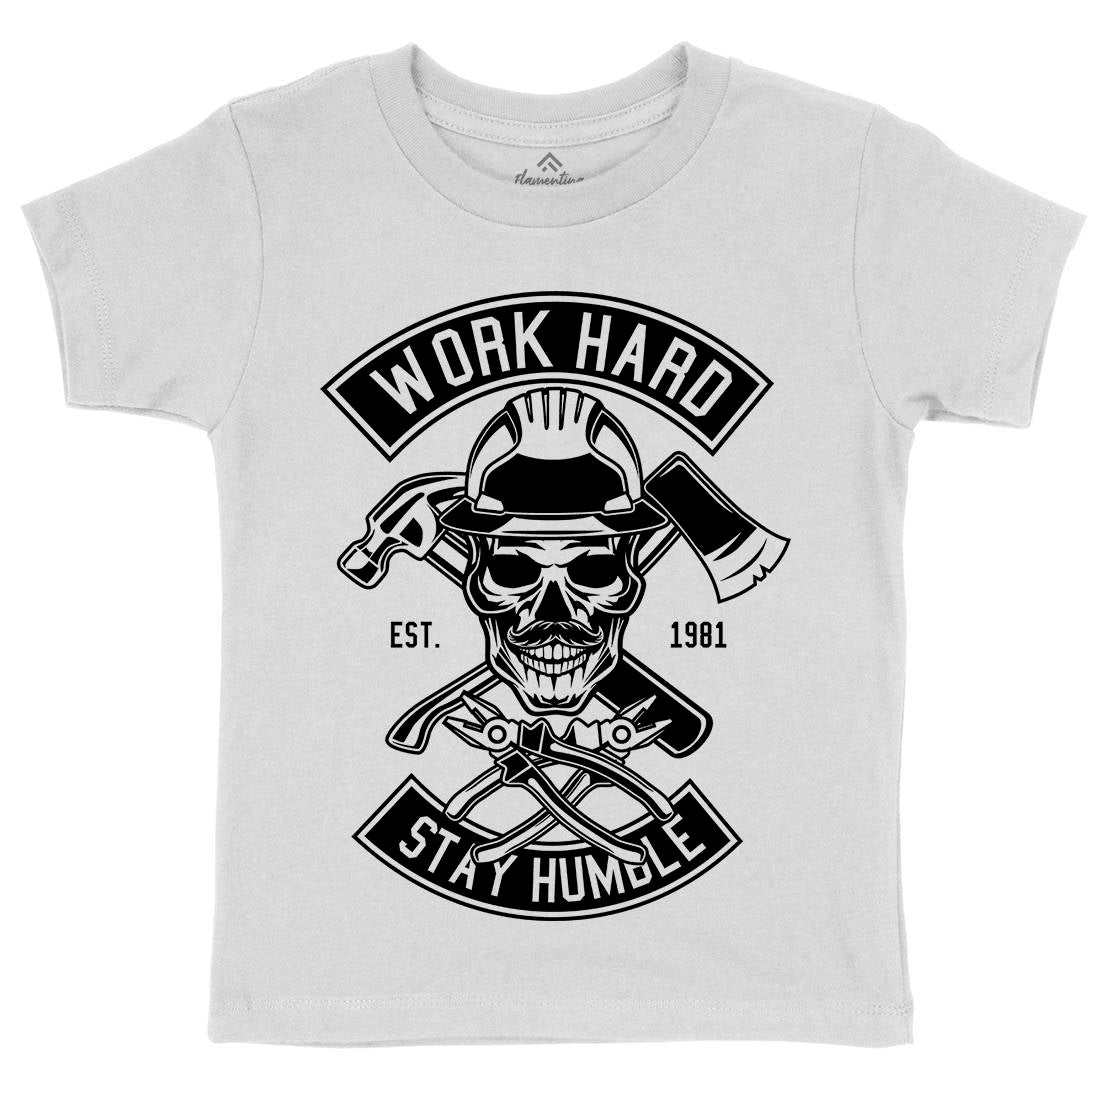 Work Hard Kids Crew Neck T-Shirt Retro B673